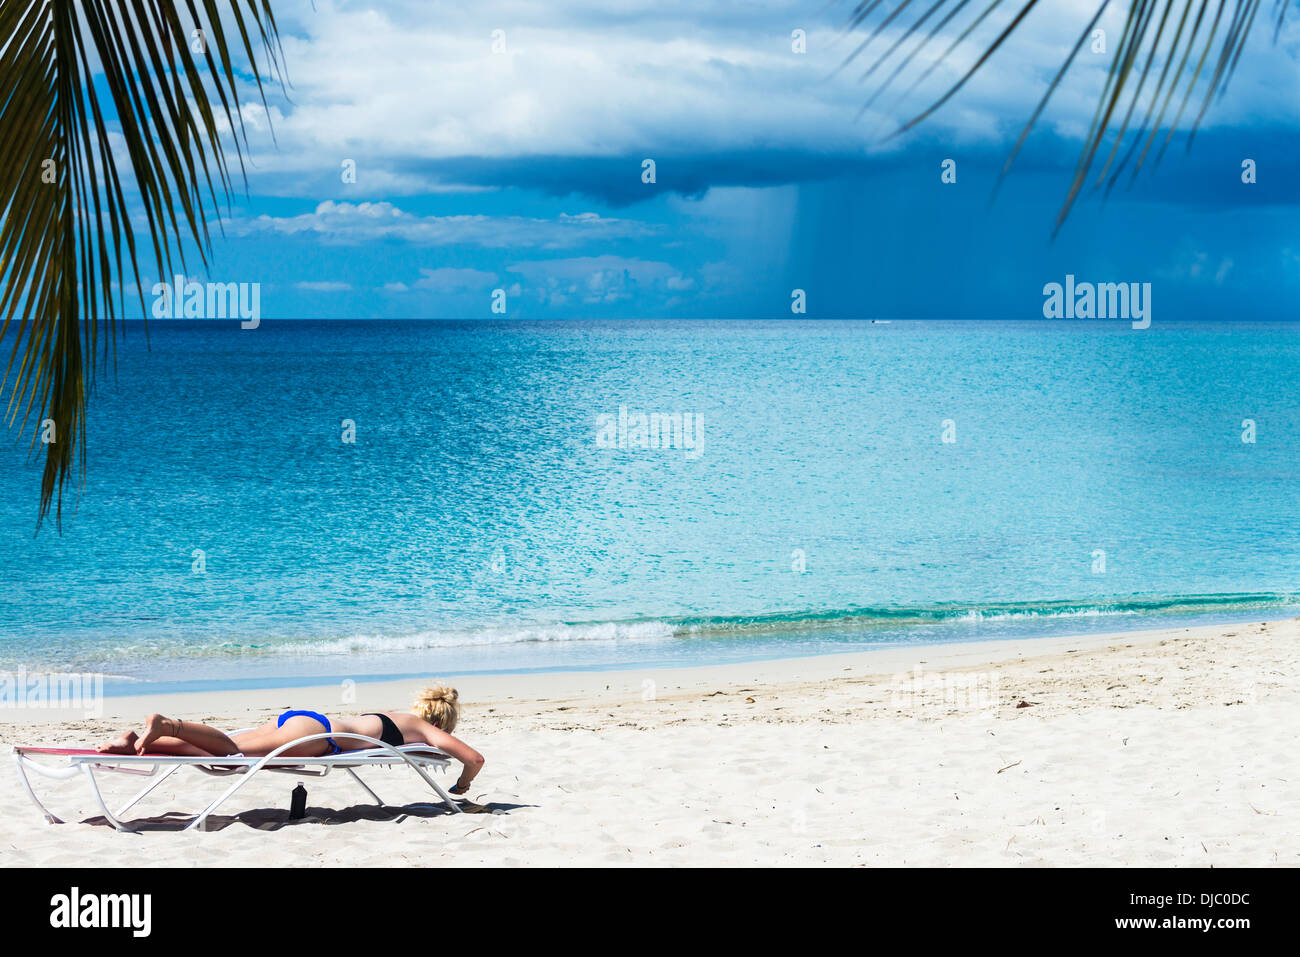 Un giovane biondo donna caucasica sunbathes in una chaise longue a St. Croix, Isole Vergini americane, mentre una tempesta infuria in mare. Foto Stock